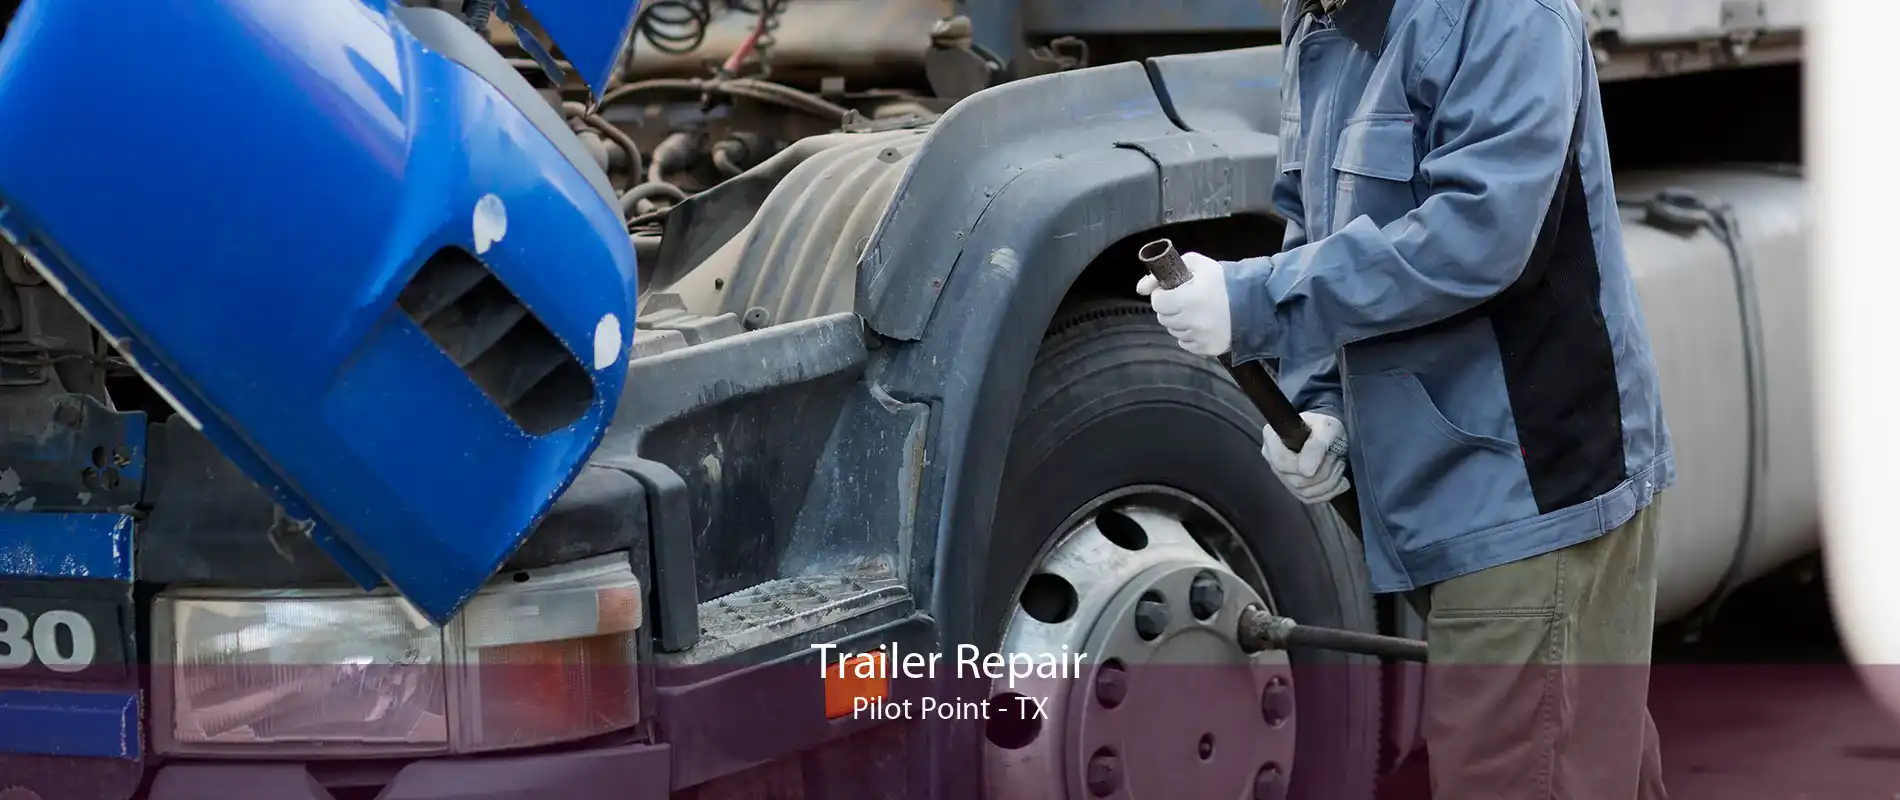 Trailer Repair Pilot Point - TX